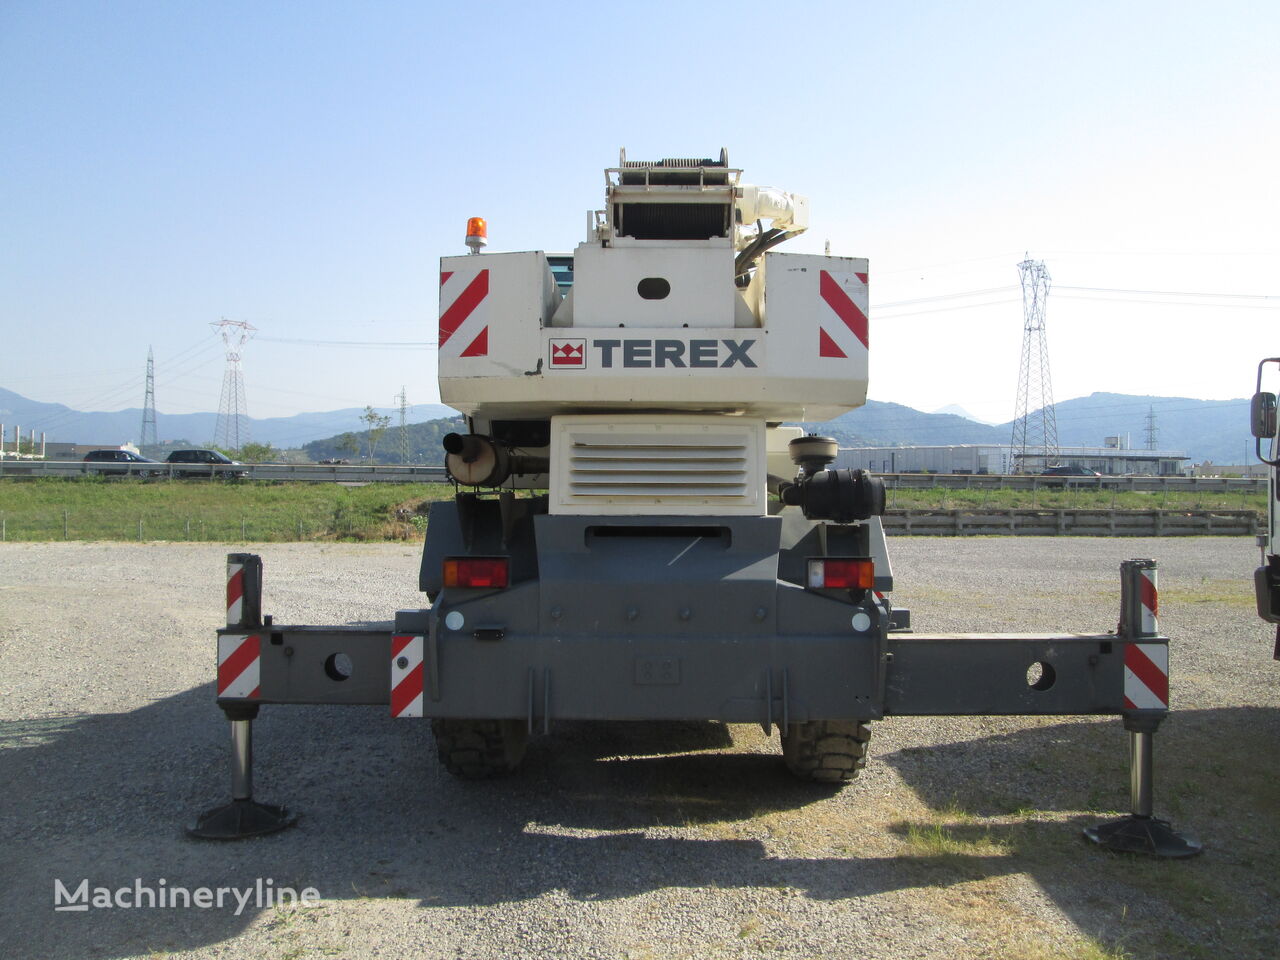 Terex A450 mobile crane